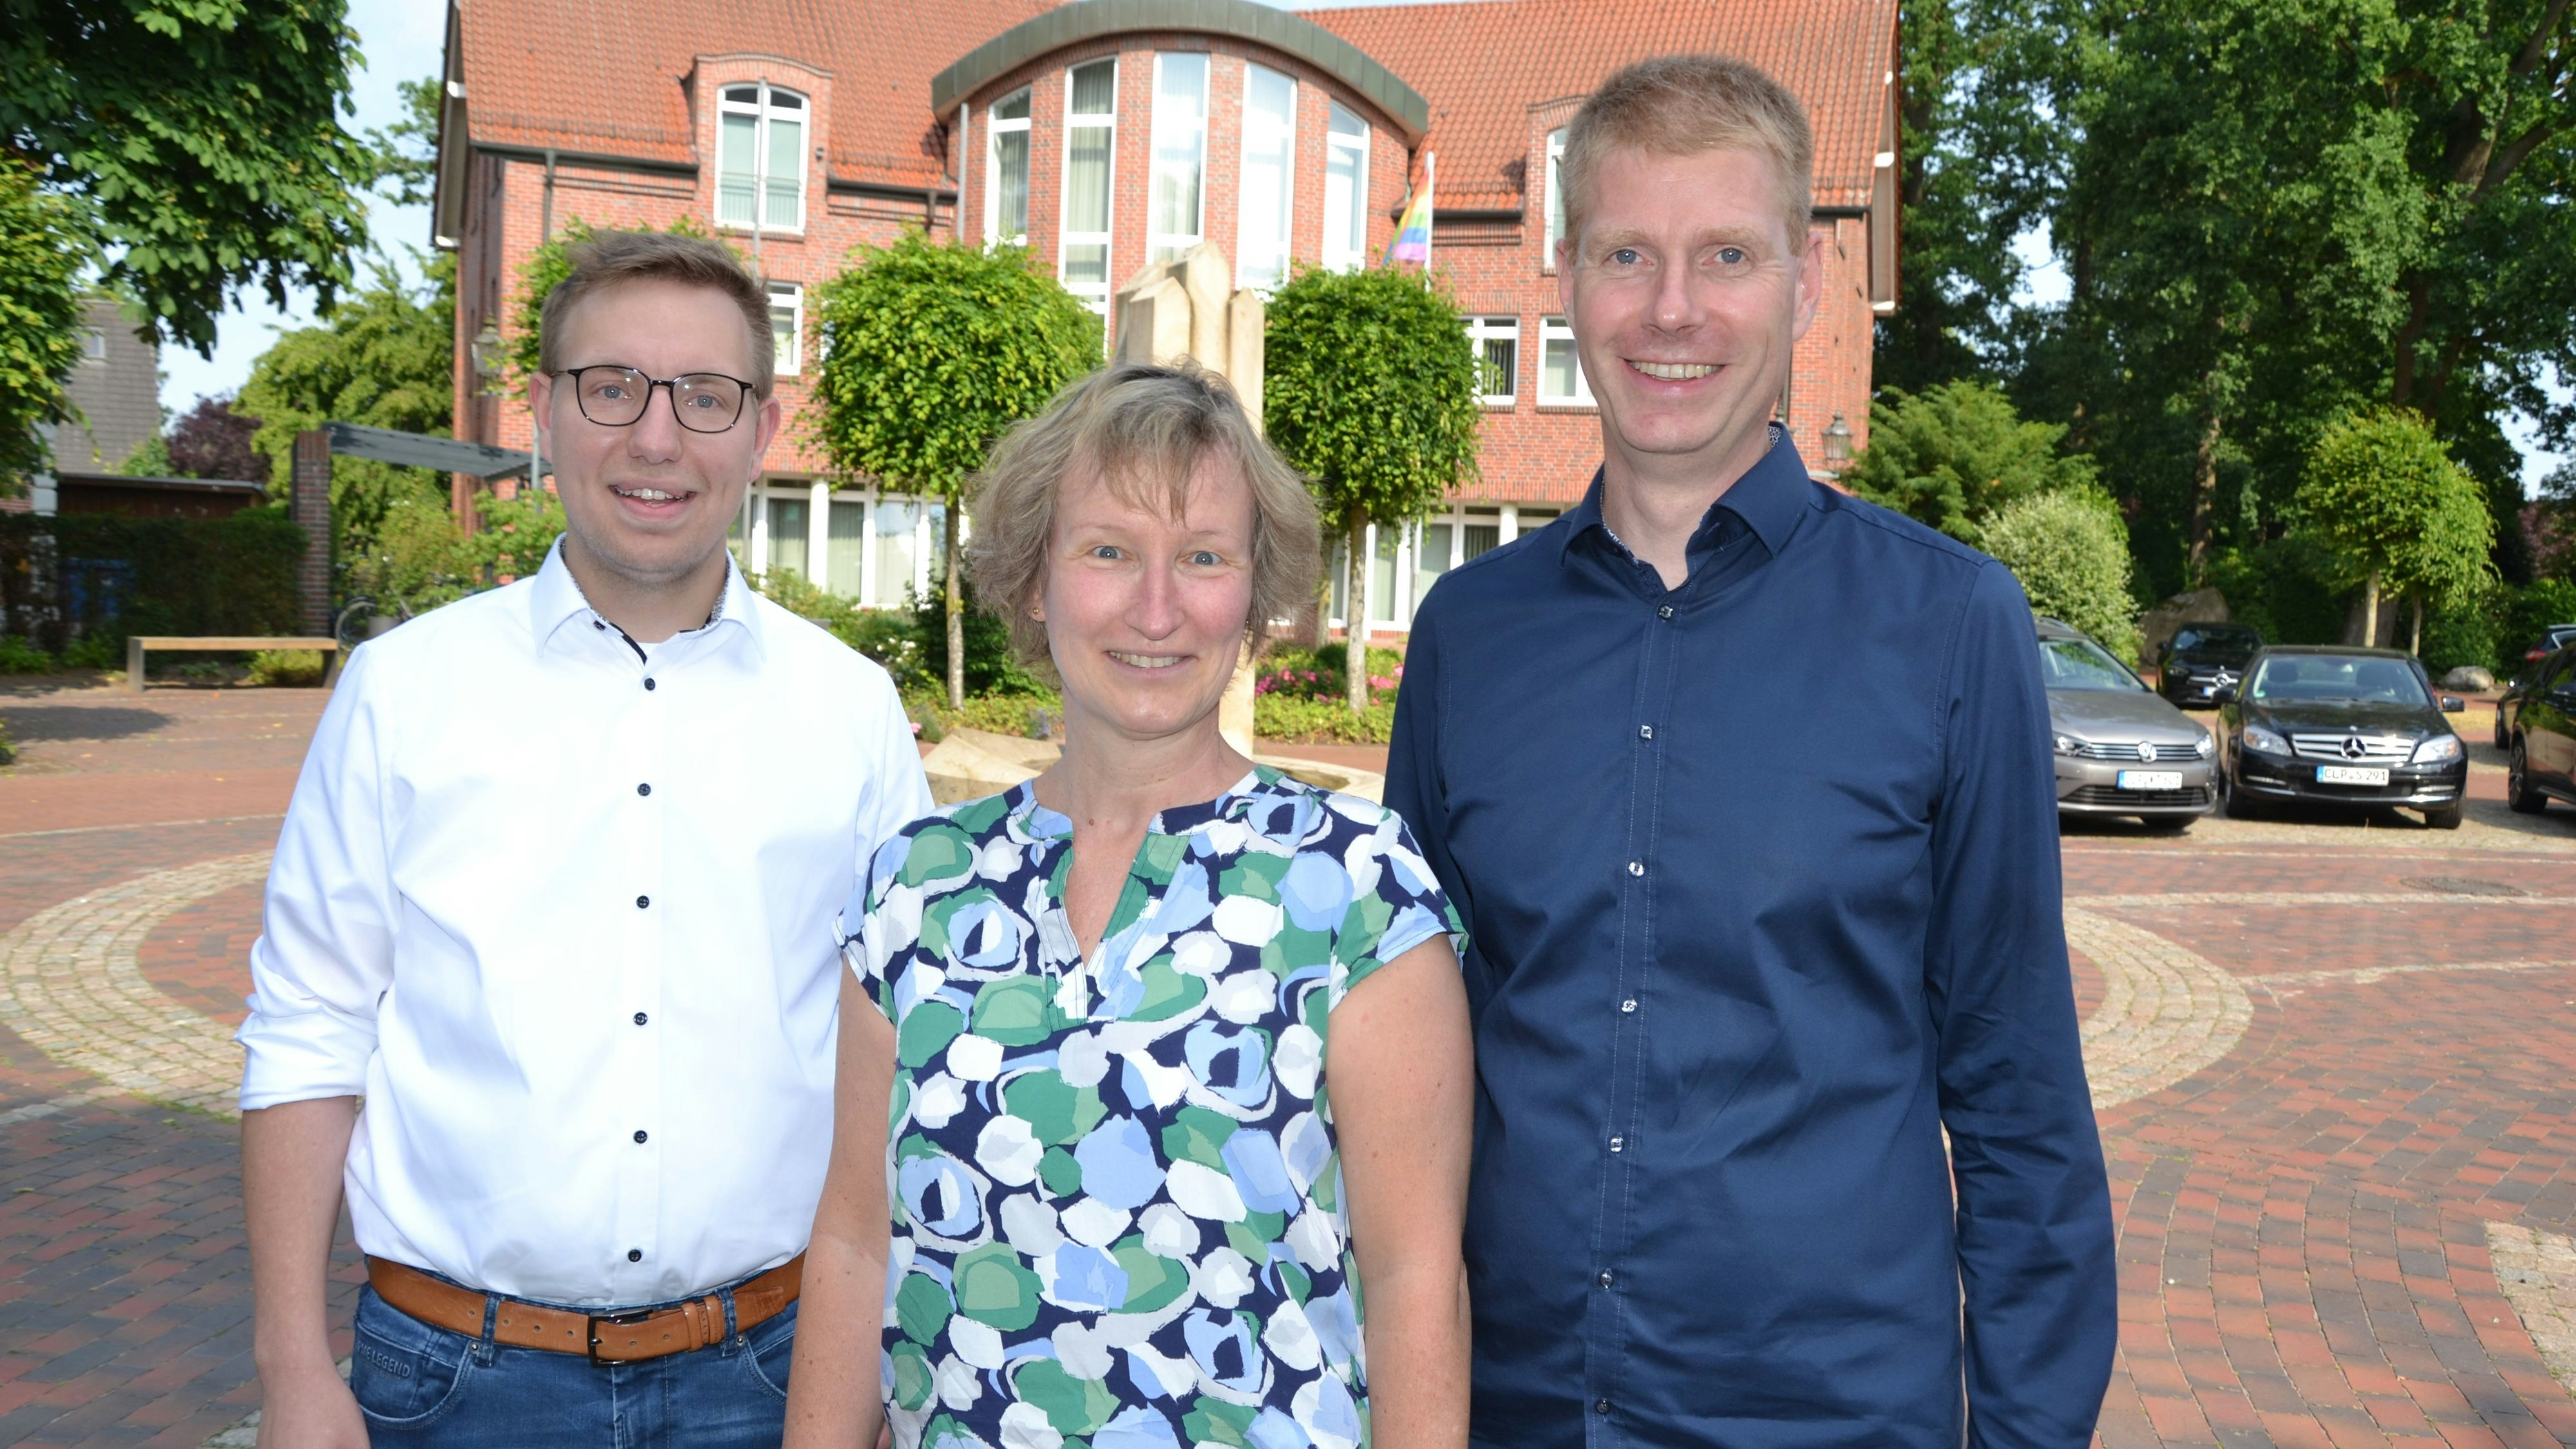 Stellt sich zur Wahl: Lydia Kocar möchte Bürgermeisterin in Lindern werden. CDU-Gemeindeverbandsvorsitzender Stefan Schute (rechts) und Fraktionschef Dirk Ortmann freuen sich über ihre Kandidatin. Foto: G. Meyer